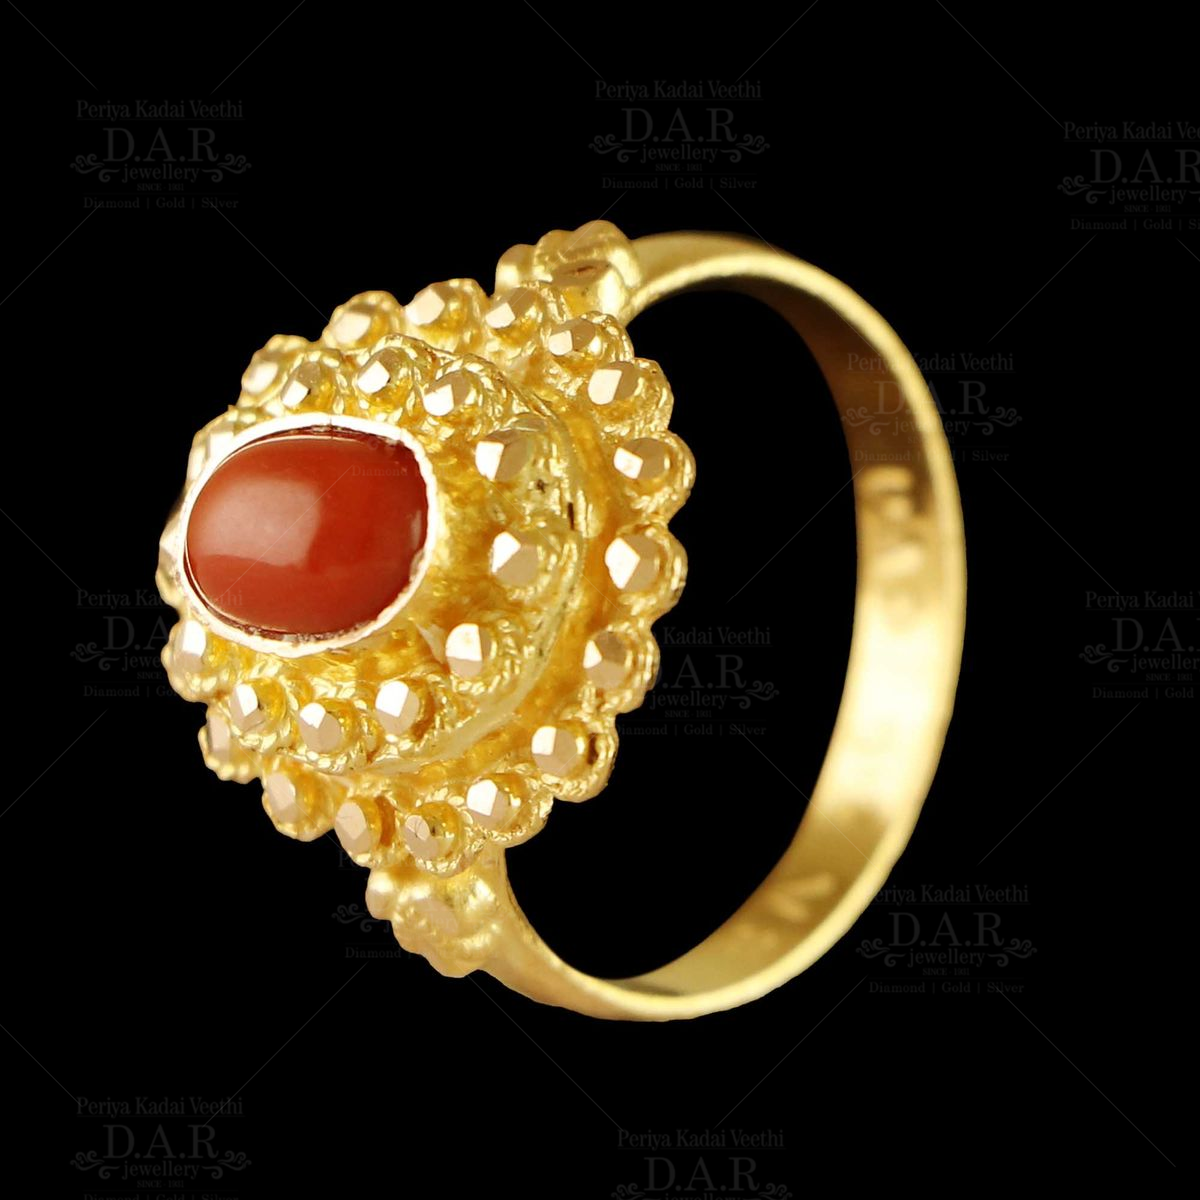 100% Original Coral Monga Gemstone Ring For Men & Women